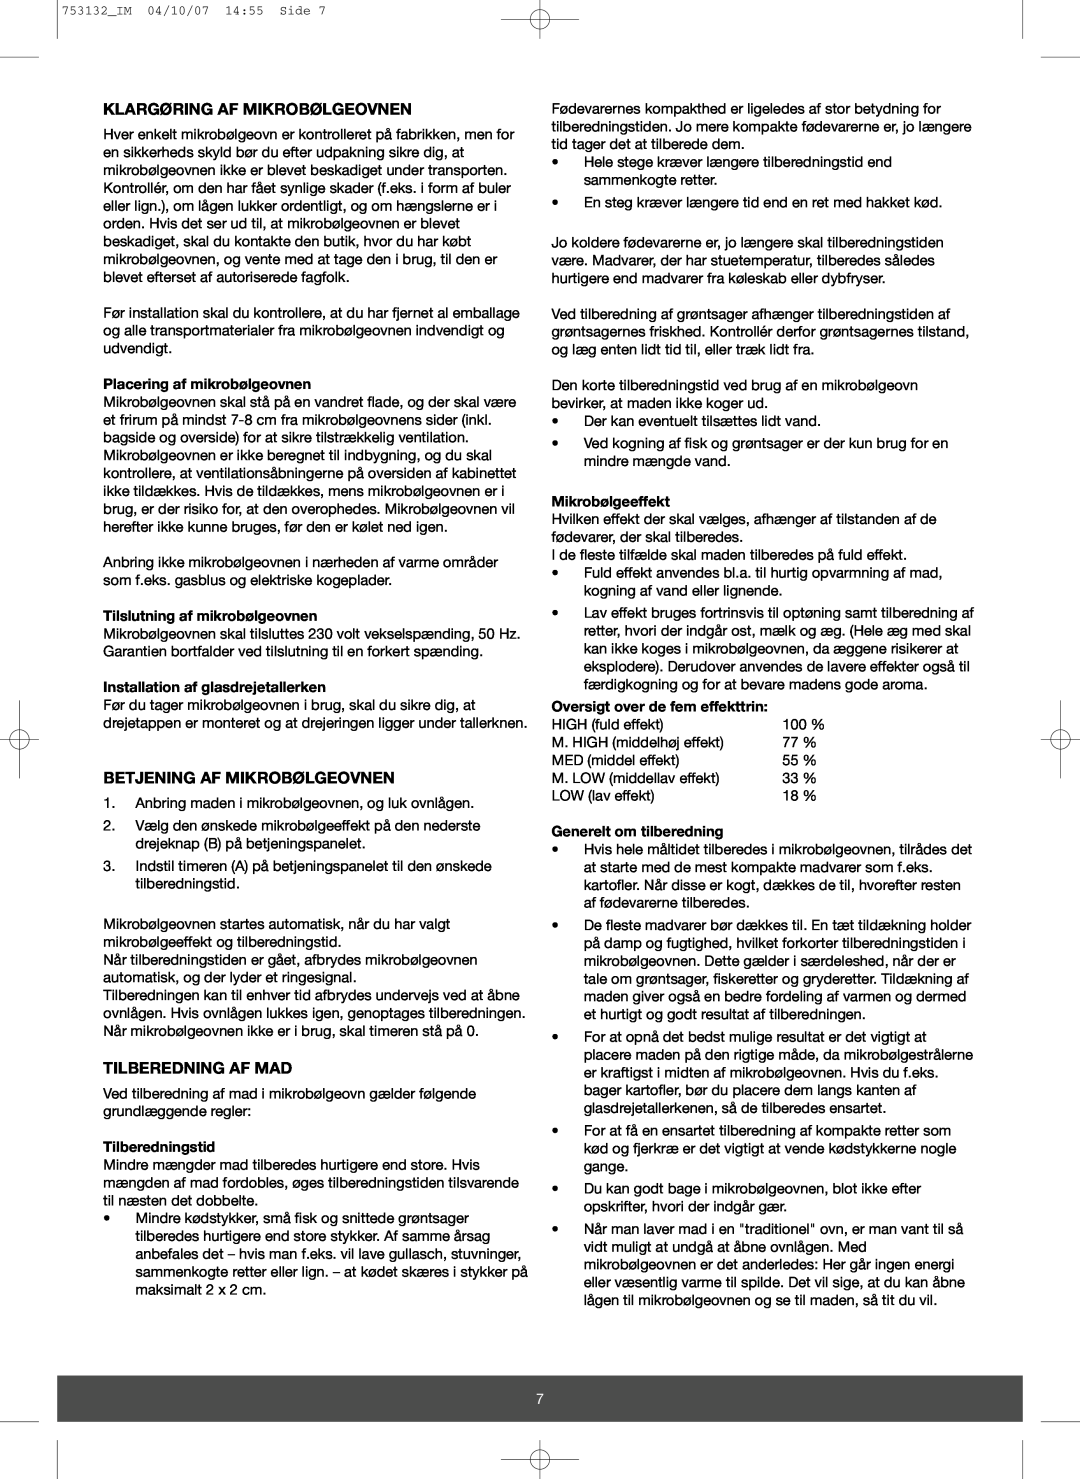 Melissa 753-132 manual Klargøring Af Mikrobølgeovnen, Betjening Af Mikrobølgeovnen, Tilberedning Af Mad, Tilberedningstid 